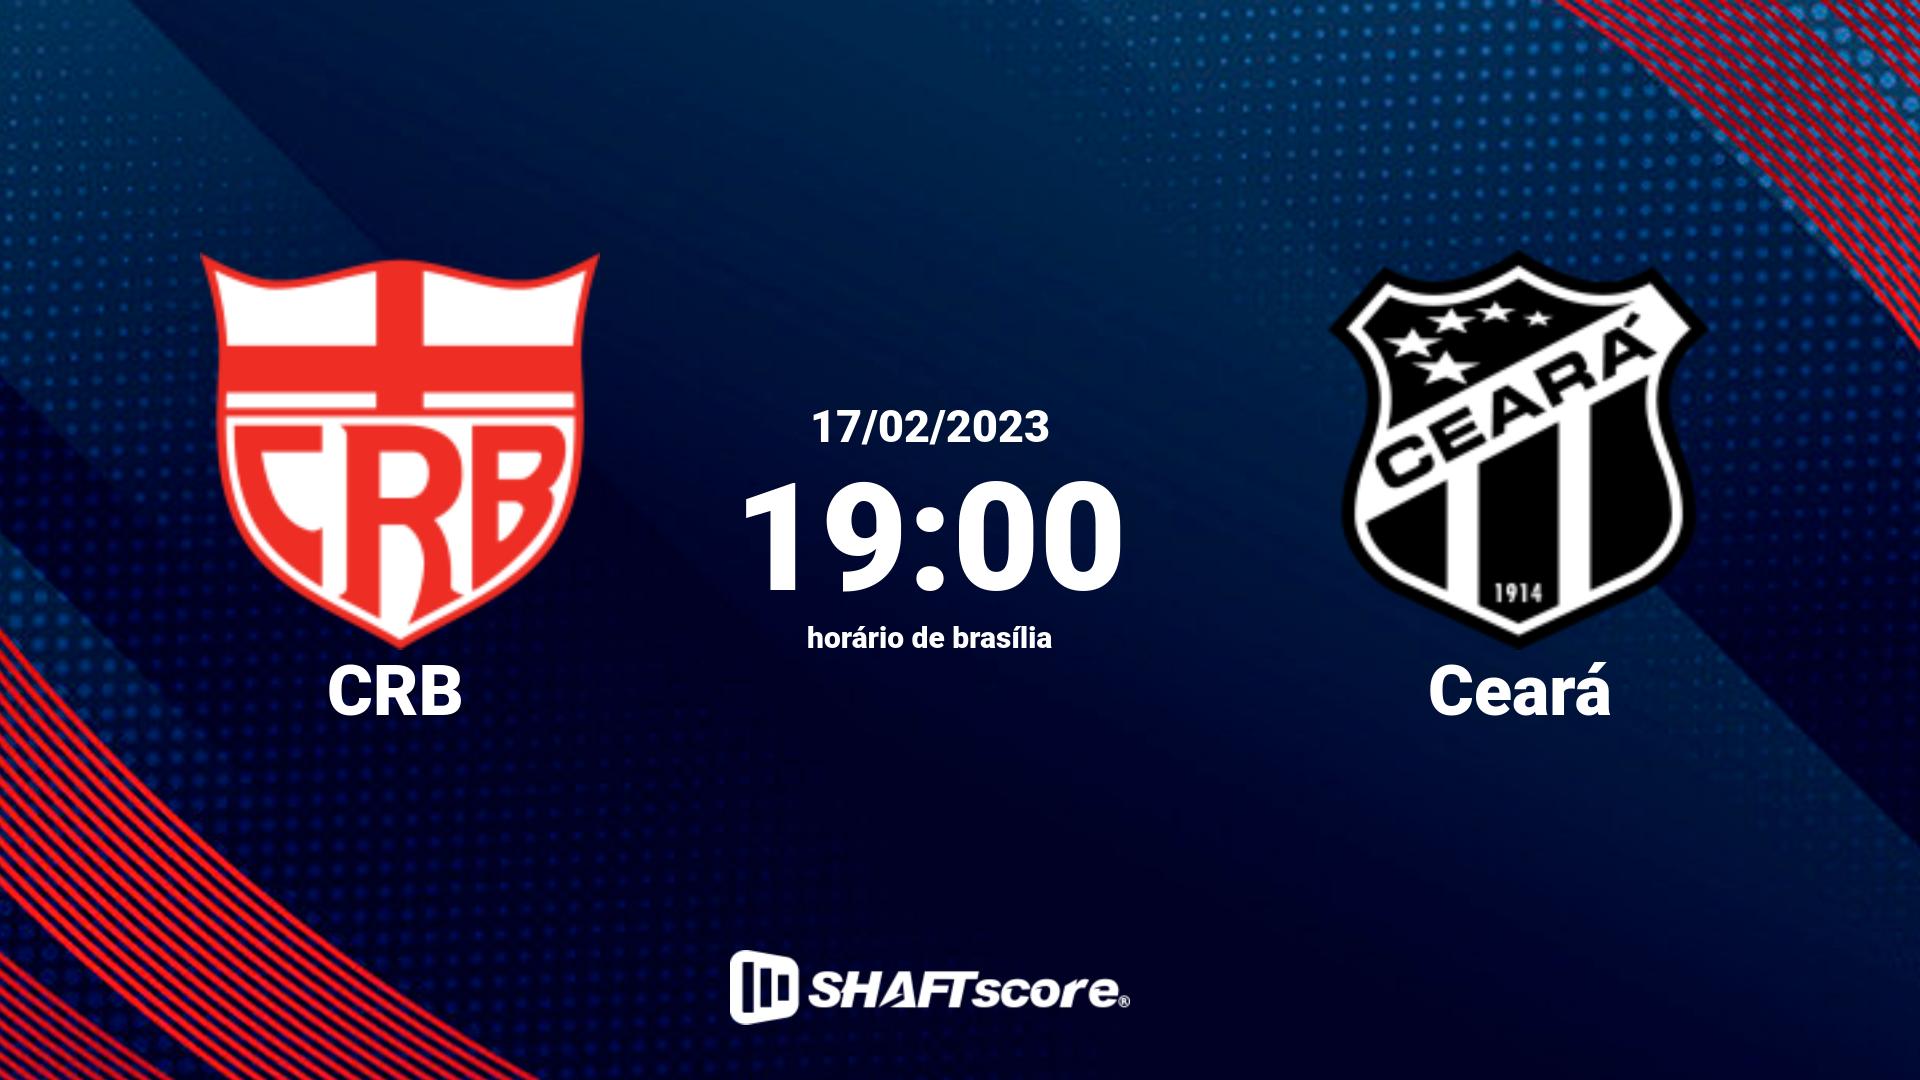 Estatísticas do jogo CRB vs Ceará 17.02 19:00